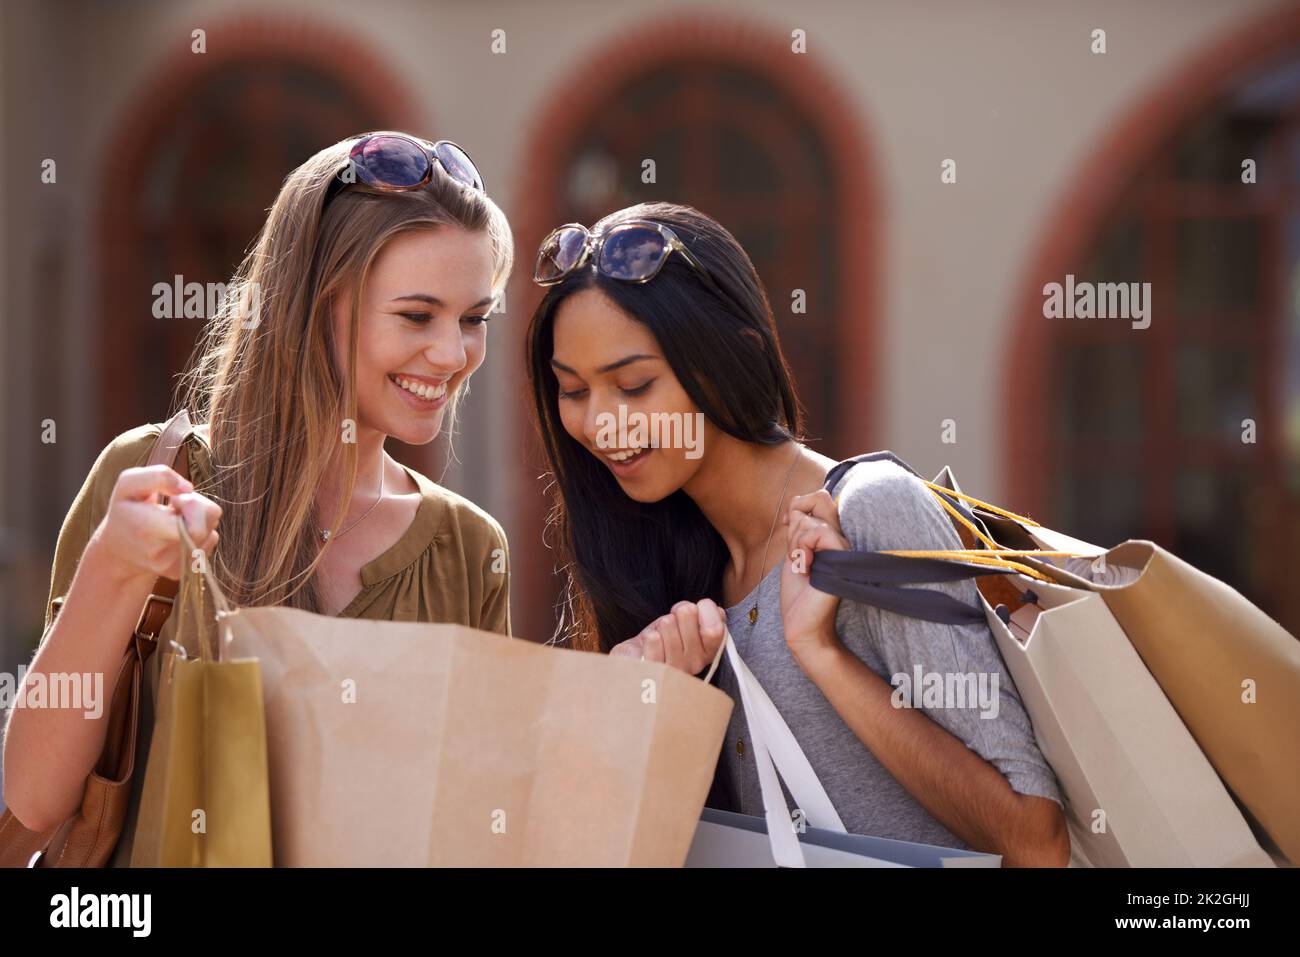 Mostrar y decir. Dos mujeres jóvenes mirando sus compras del día. Foto de stock